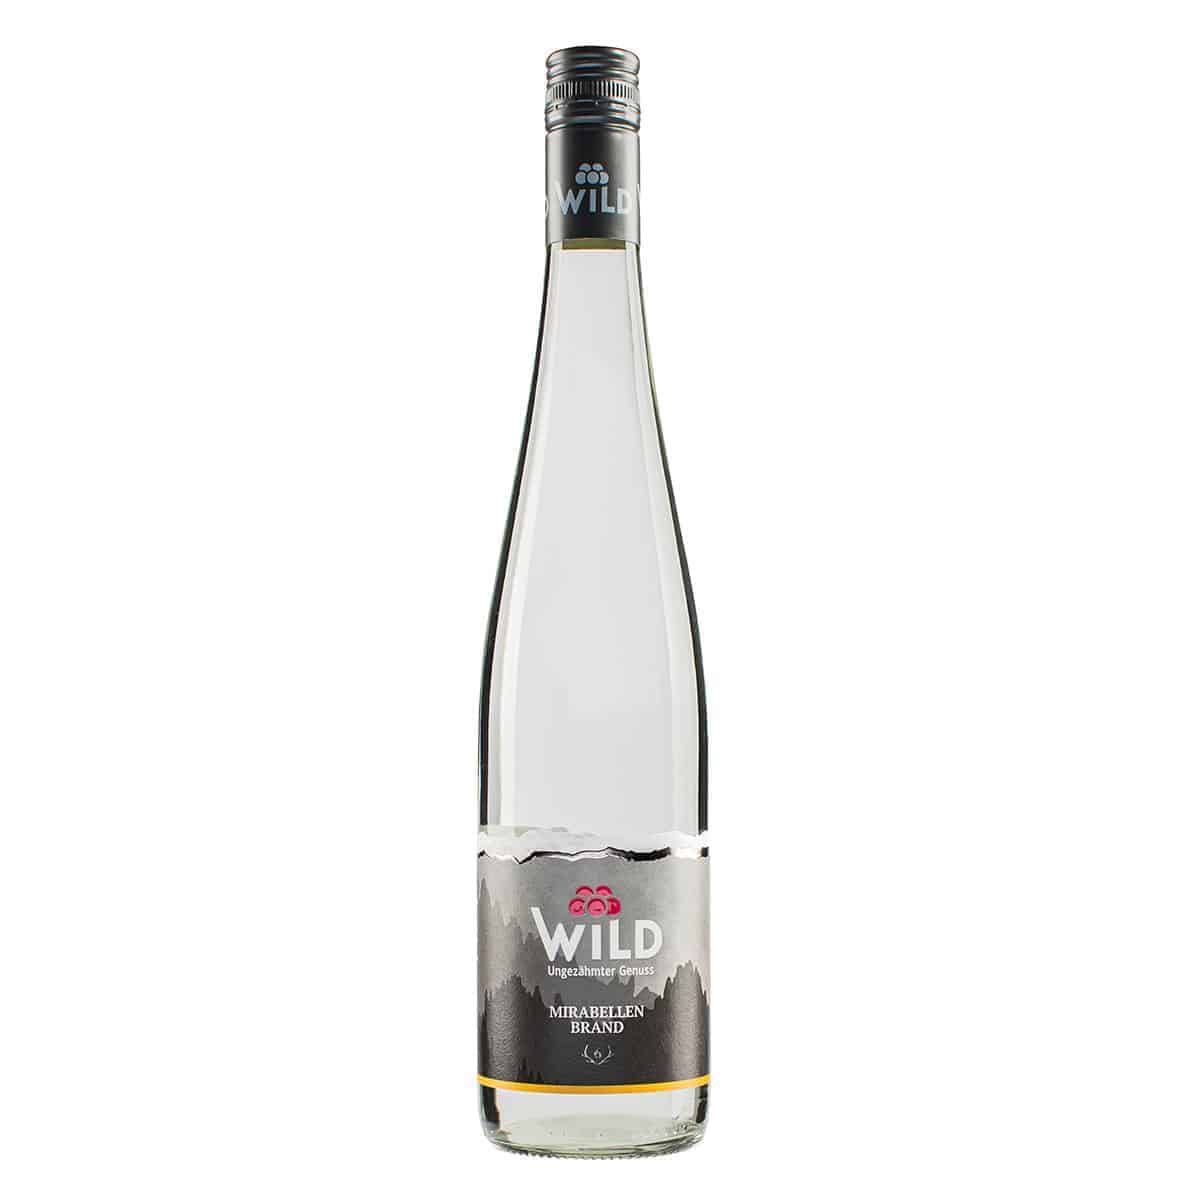 Wild Sparset 1 - Kirschwasser, Williams und Mirabelle inkl. 2 Wild-Gläser